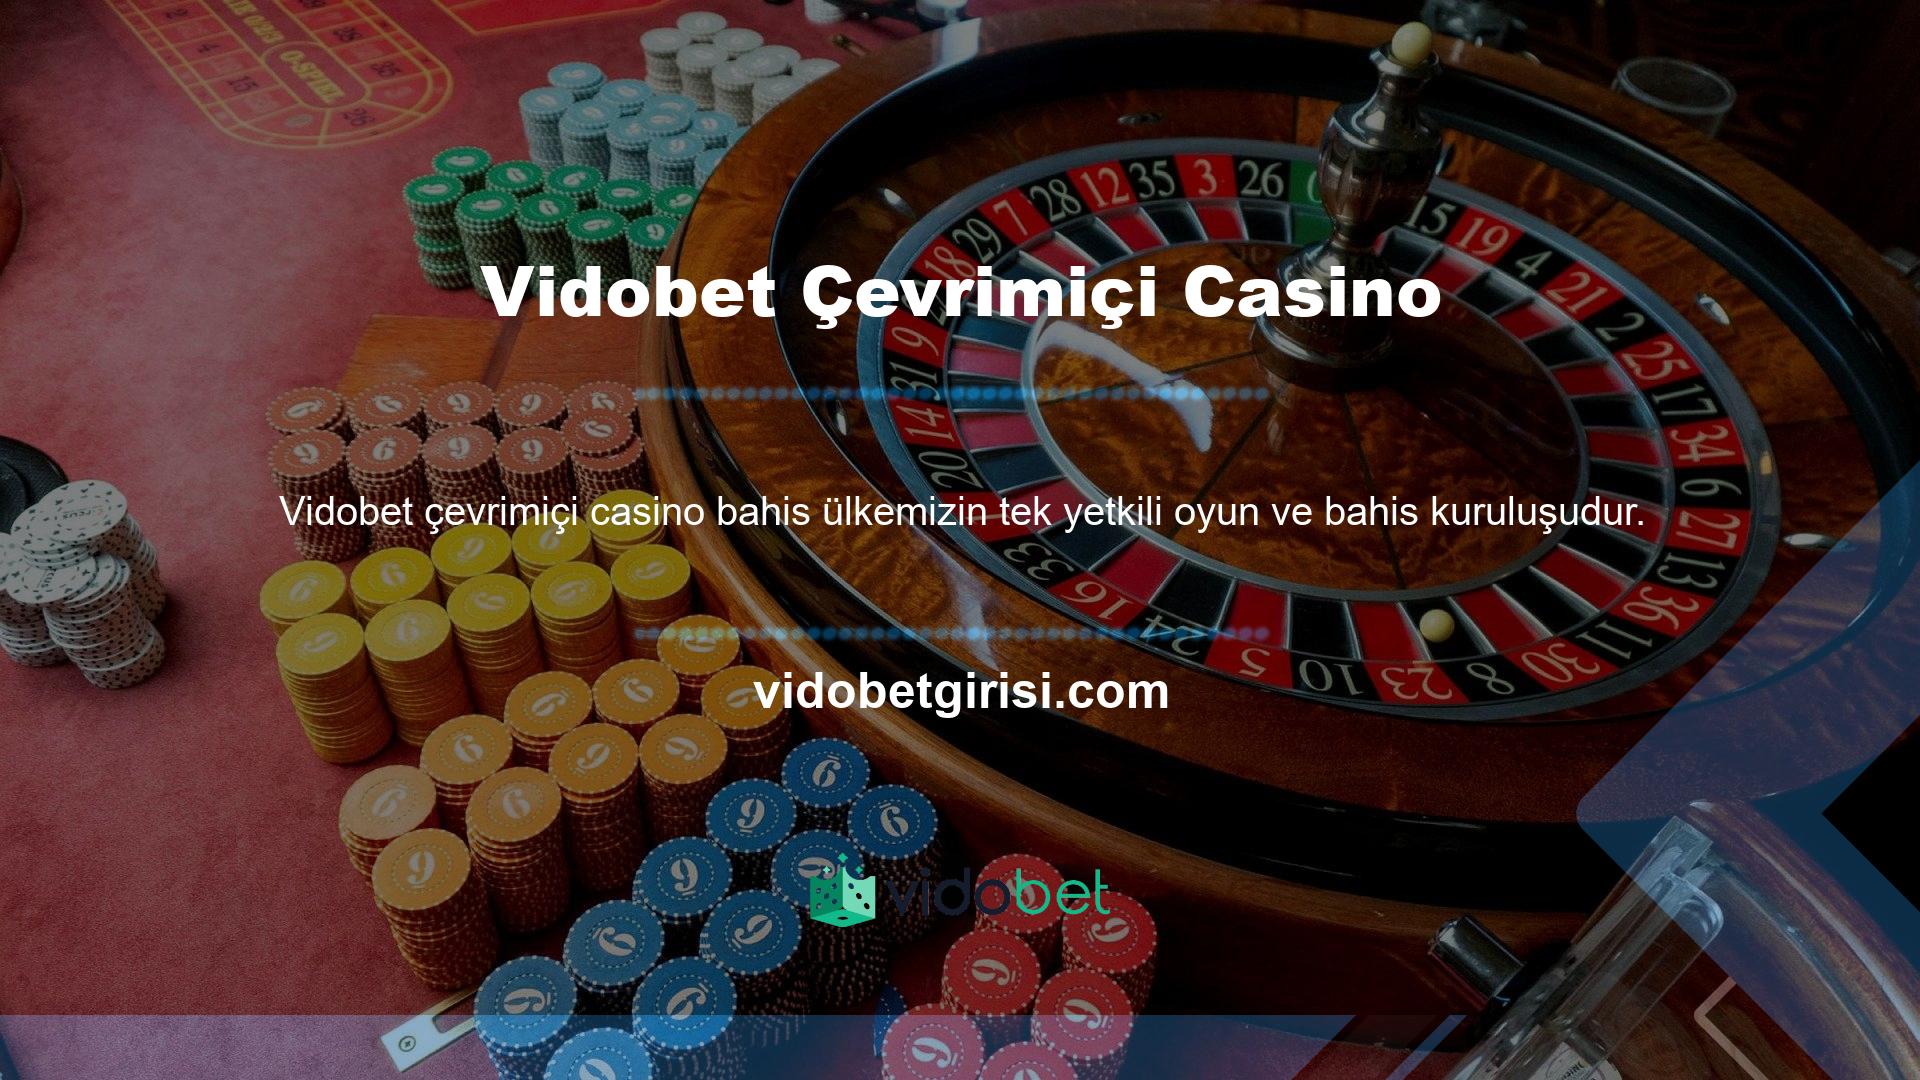 Vidobet yanı sıra Türk kullanıcılar için çok sayıda yabancı bahis sitesi bulunmaktadır